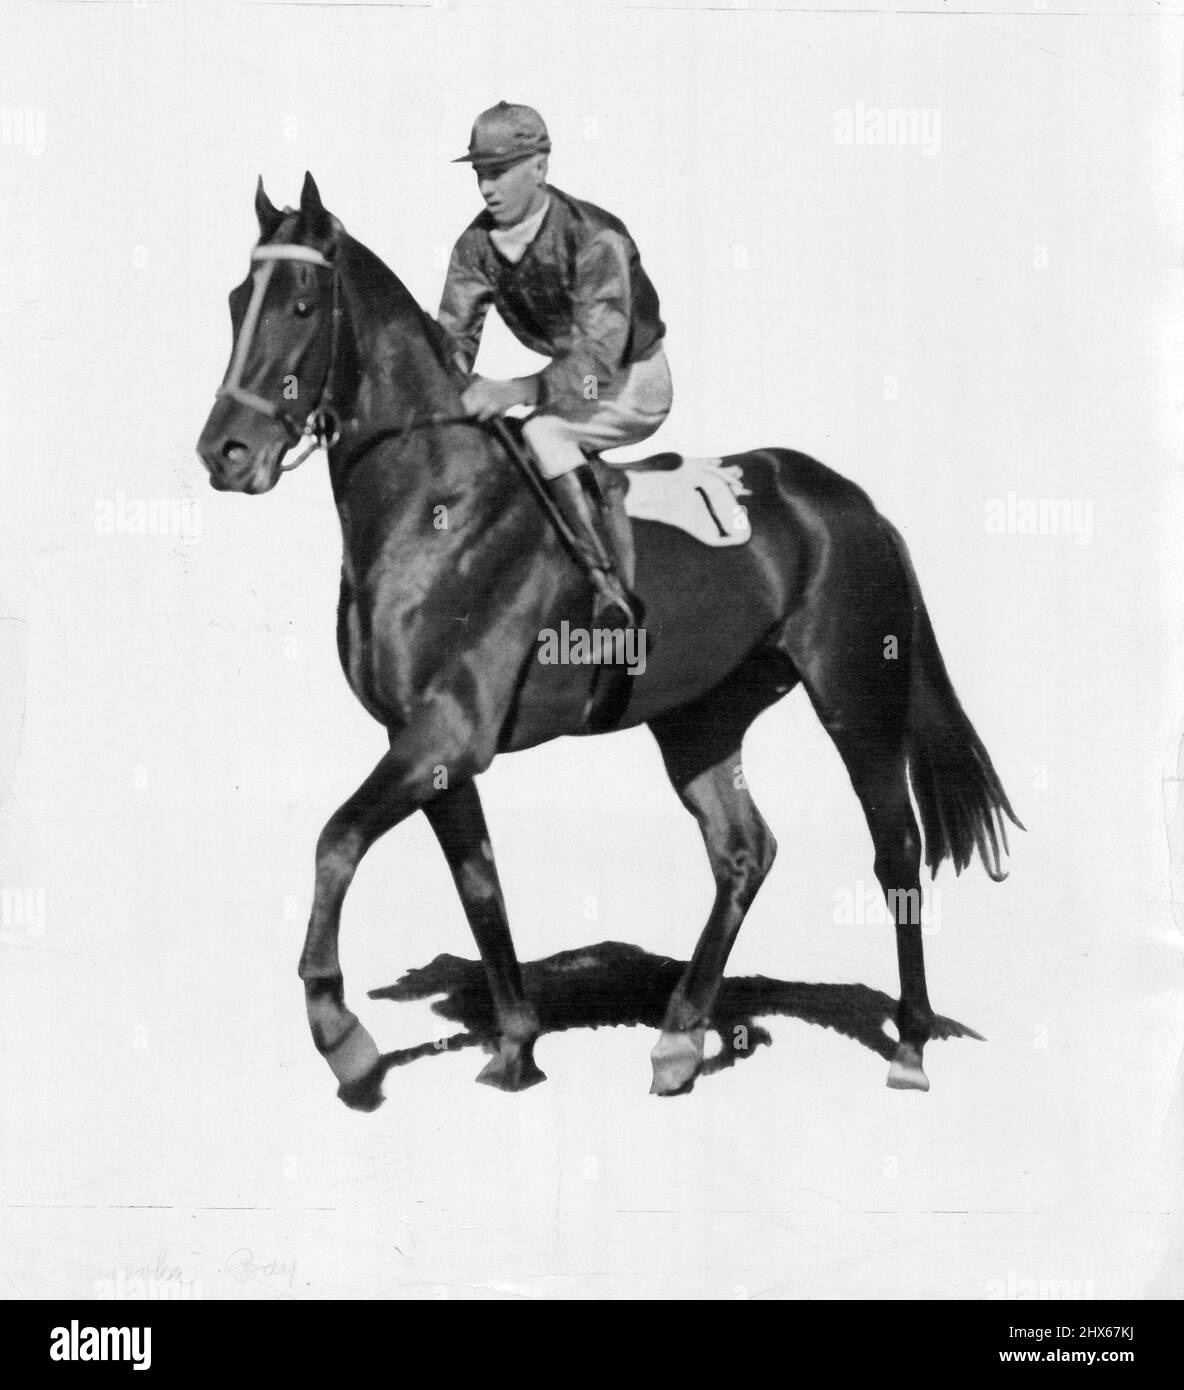 Winooka Bay Horse par Windbag-Kanooka propriété de W. C. McDonald et A. J. Matthews et formé par Mick poison. A gagné environ f20 000 en enjeux de 15 victoires, six secondes et cinq tiers. En 1933, remporte les enjeux de futurité Caulfield, AJC Doncaster H' Cap AJC All Aged Stakes, VRC Leonard Stakes et Monee Valley Quality H' Cap. Porté en Amérique, a gagné quatre des neuf courses. Retourné, cassé dans le Doncaster 1935 de l'AJC, couleurs: Tartan, manches jaunes bouchon jaune. Jockey. S. Davison. 1 août 1955. Banque D'Images